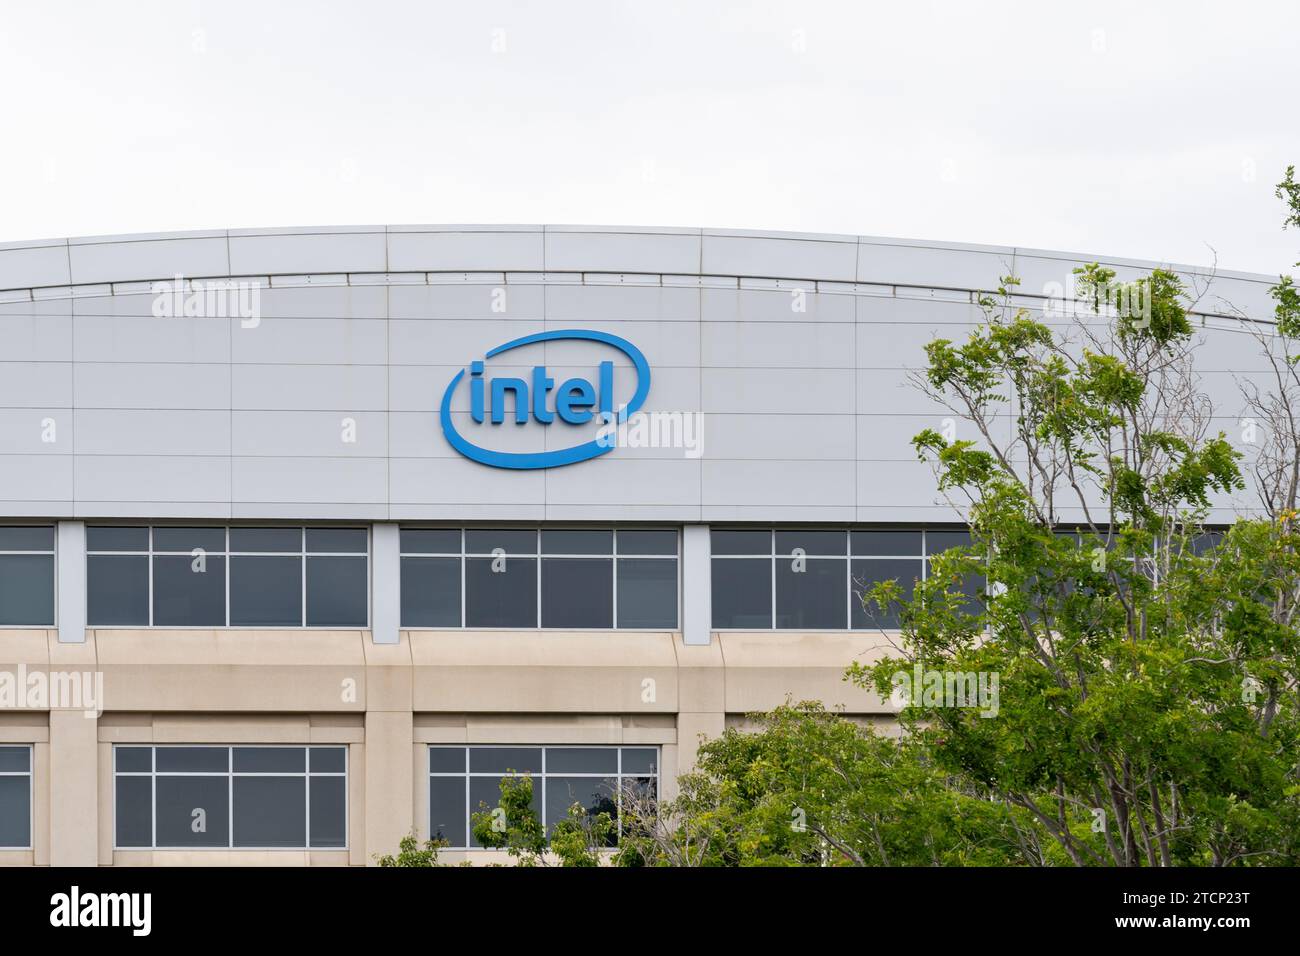 Intel office building in silicon valley, Santa Clara, California, USA Stock Photo